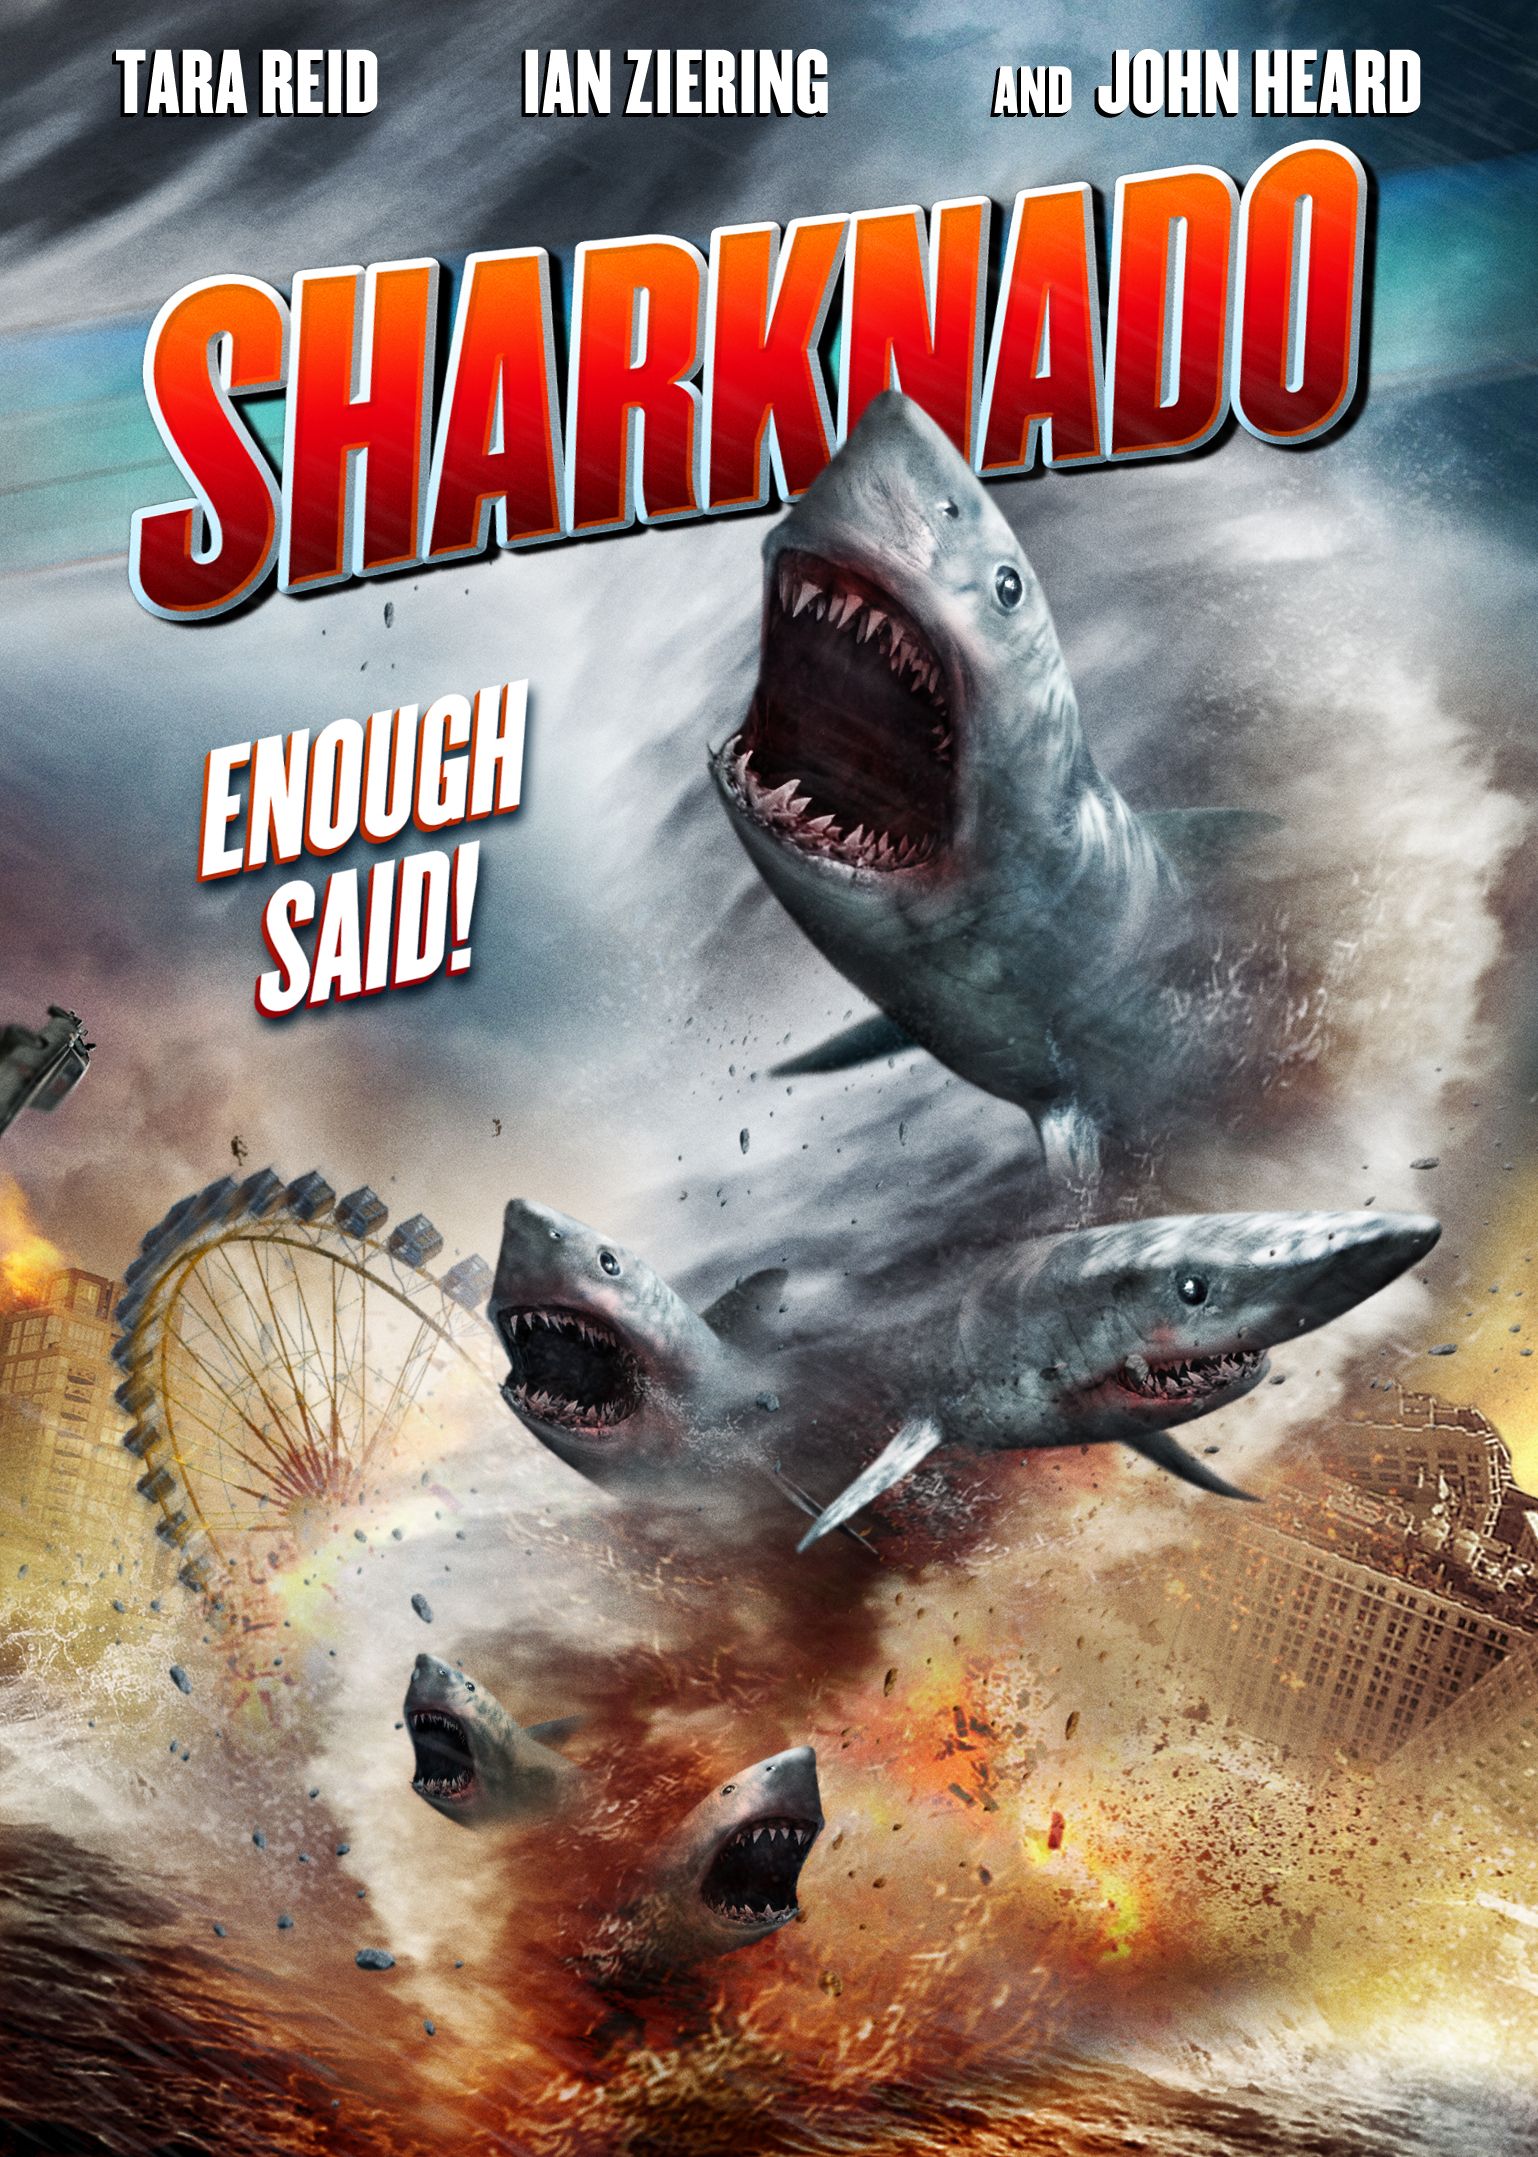 2013 Sharknado